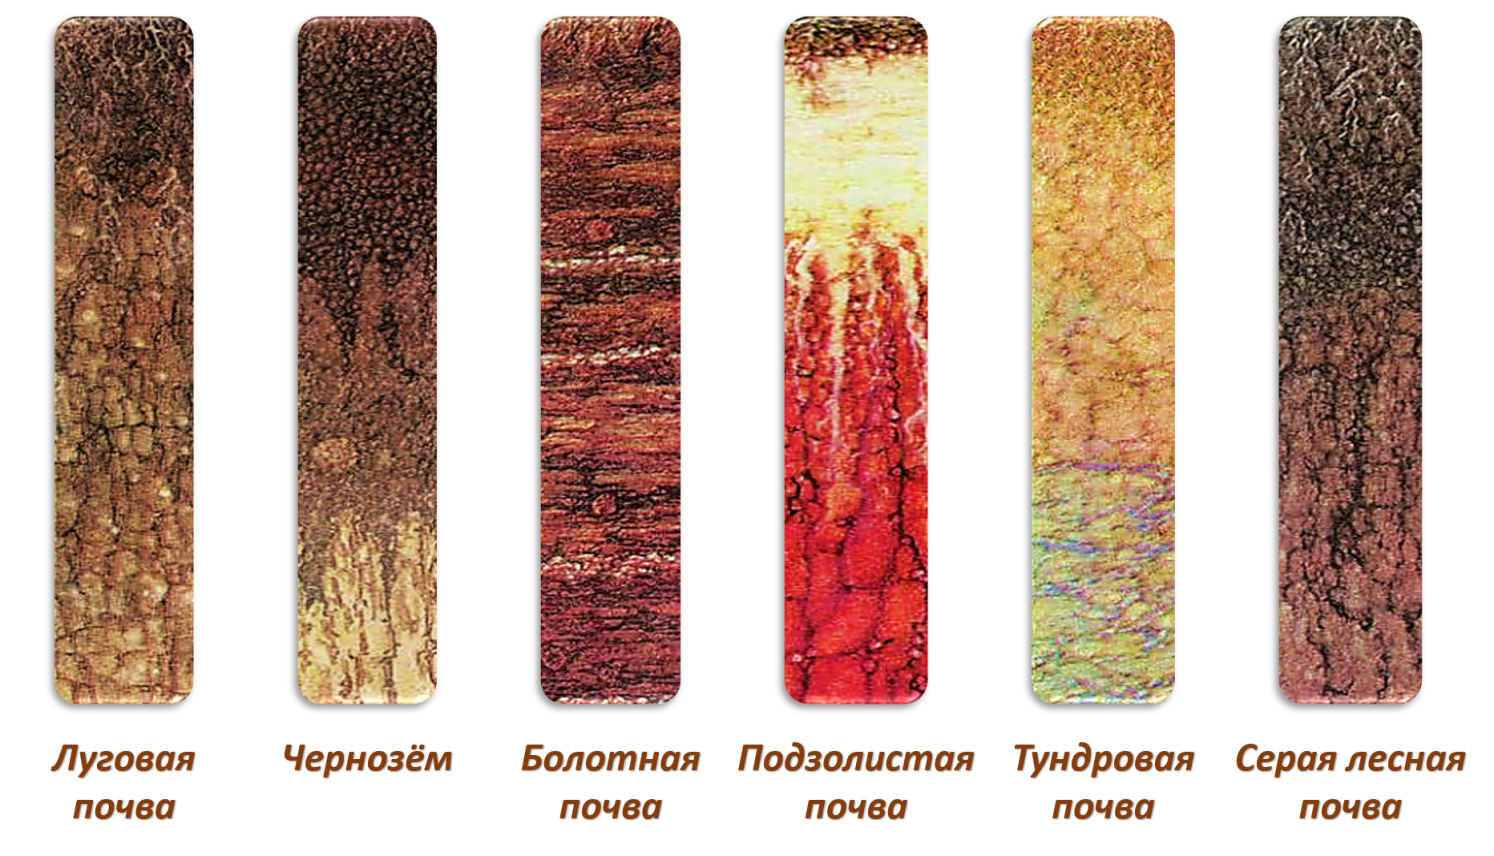 Типы почв тундровые подзолистые. Почвенные профили почв России. Почвы подзолистые Лесные чернозем. Подзолистый Тип почвы.